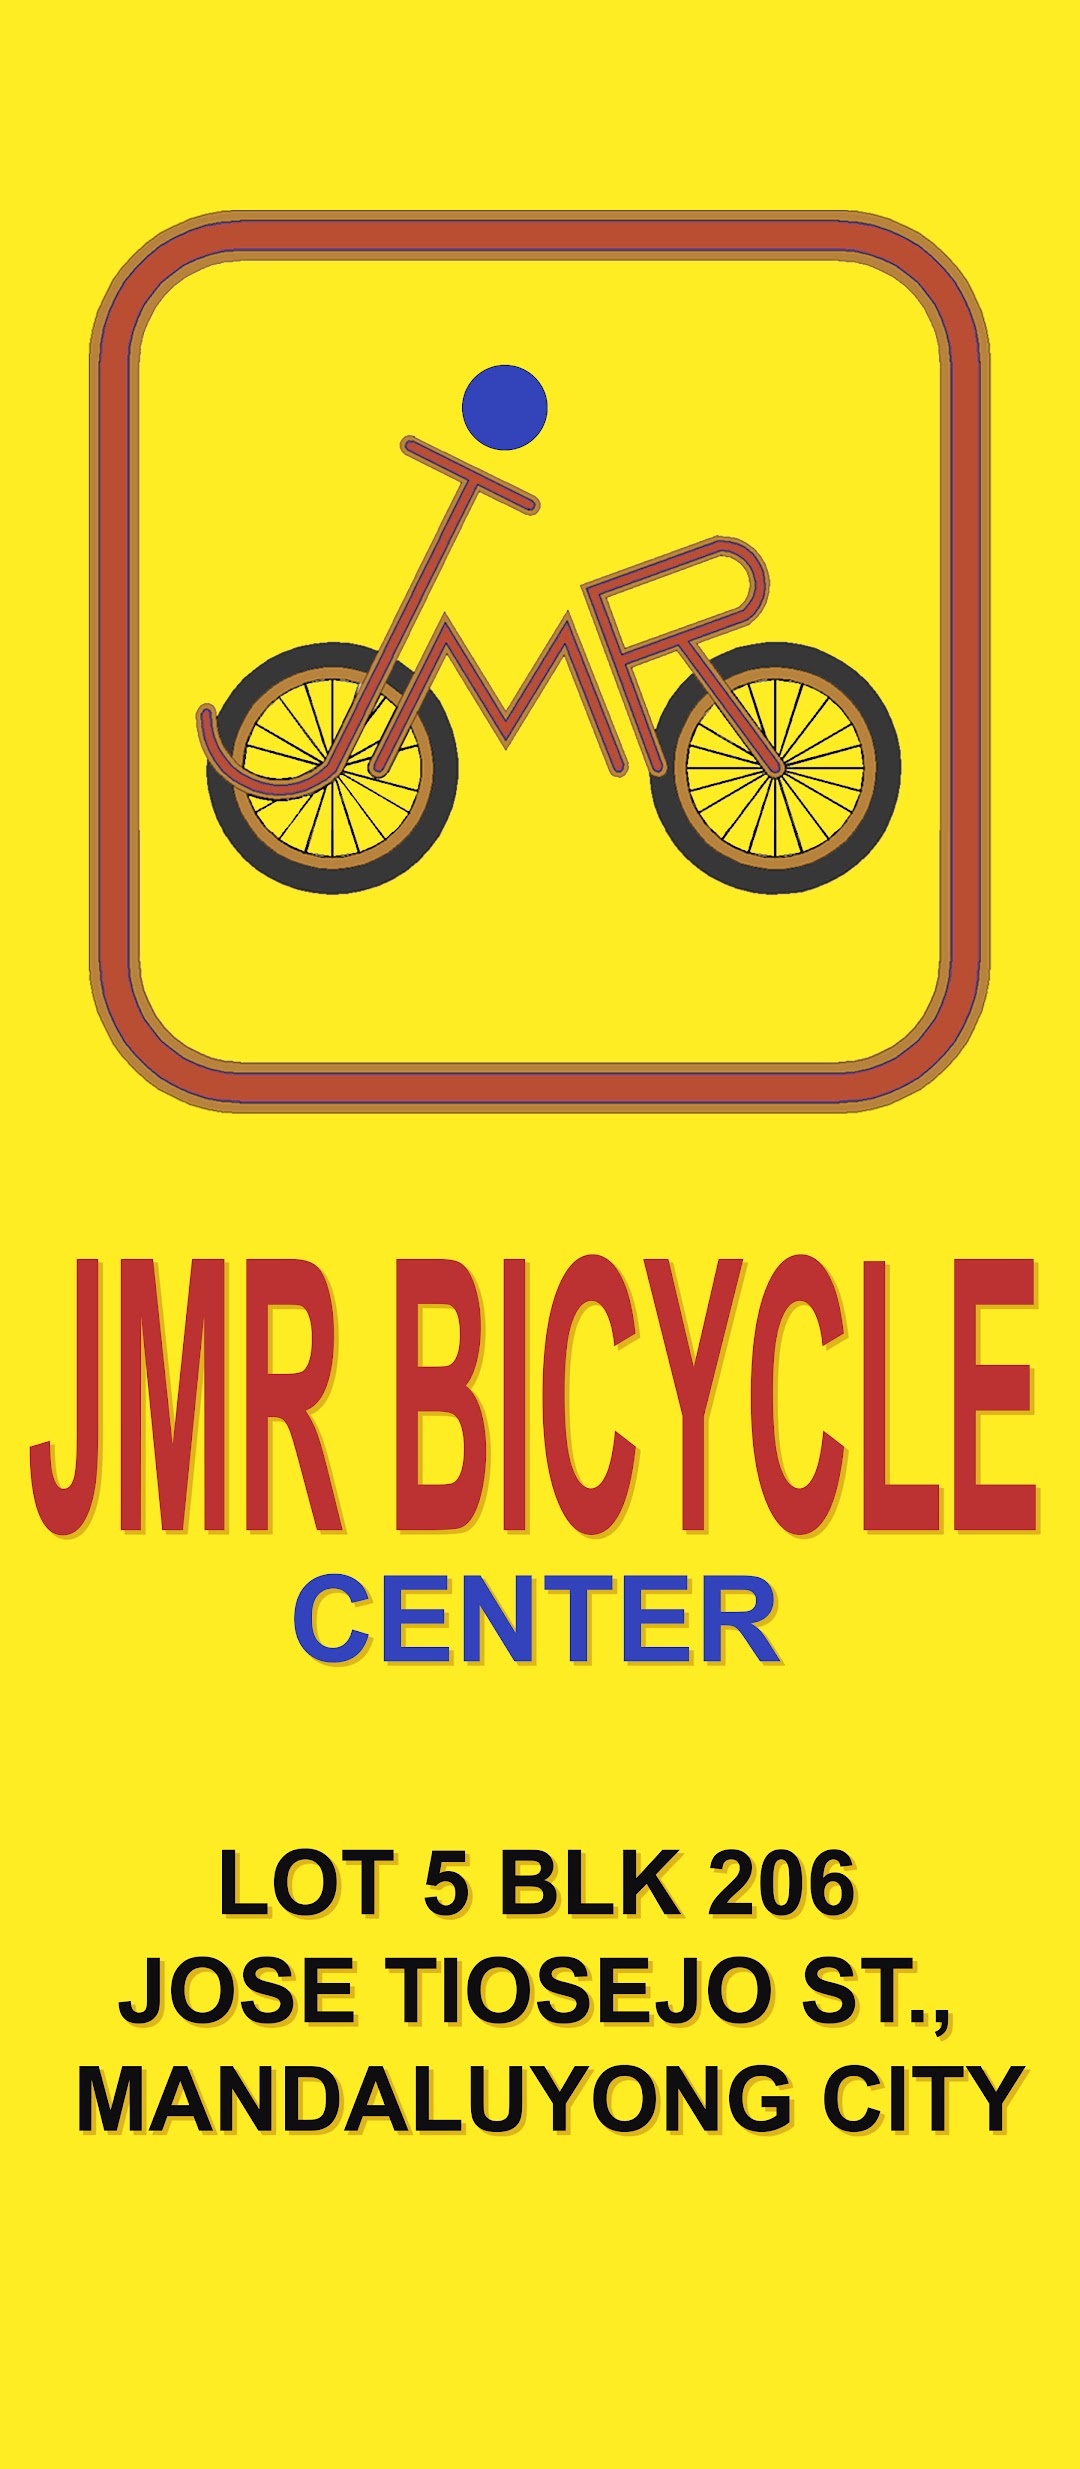 JMR BICYCLE